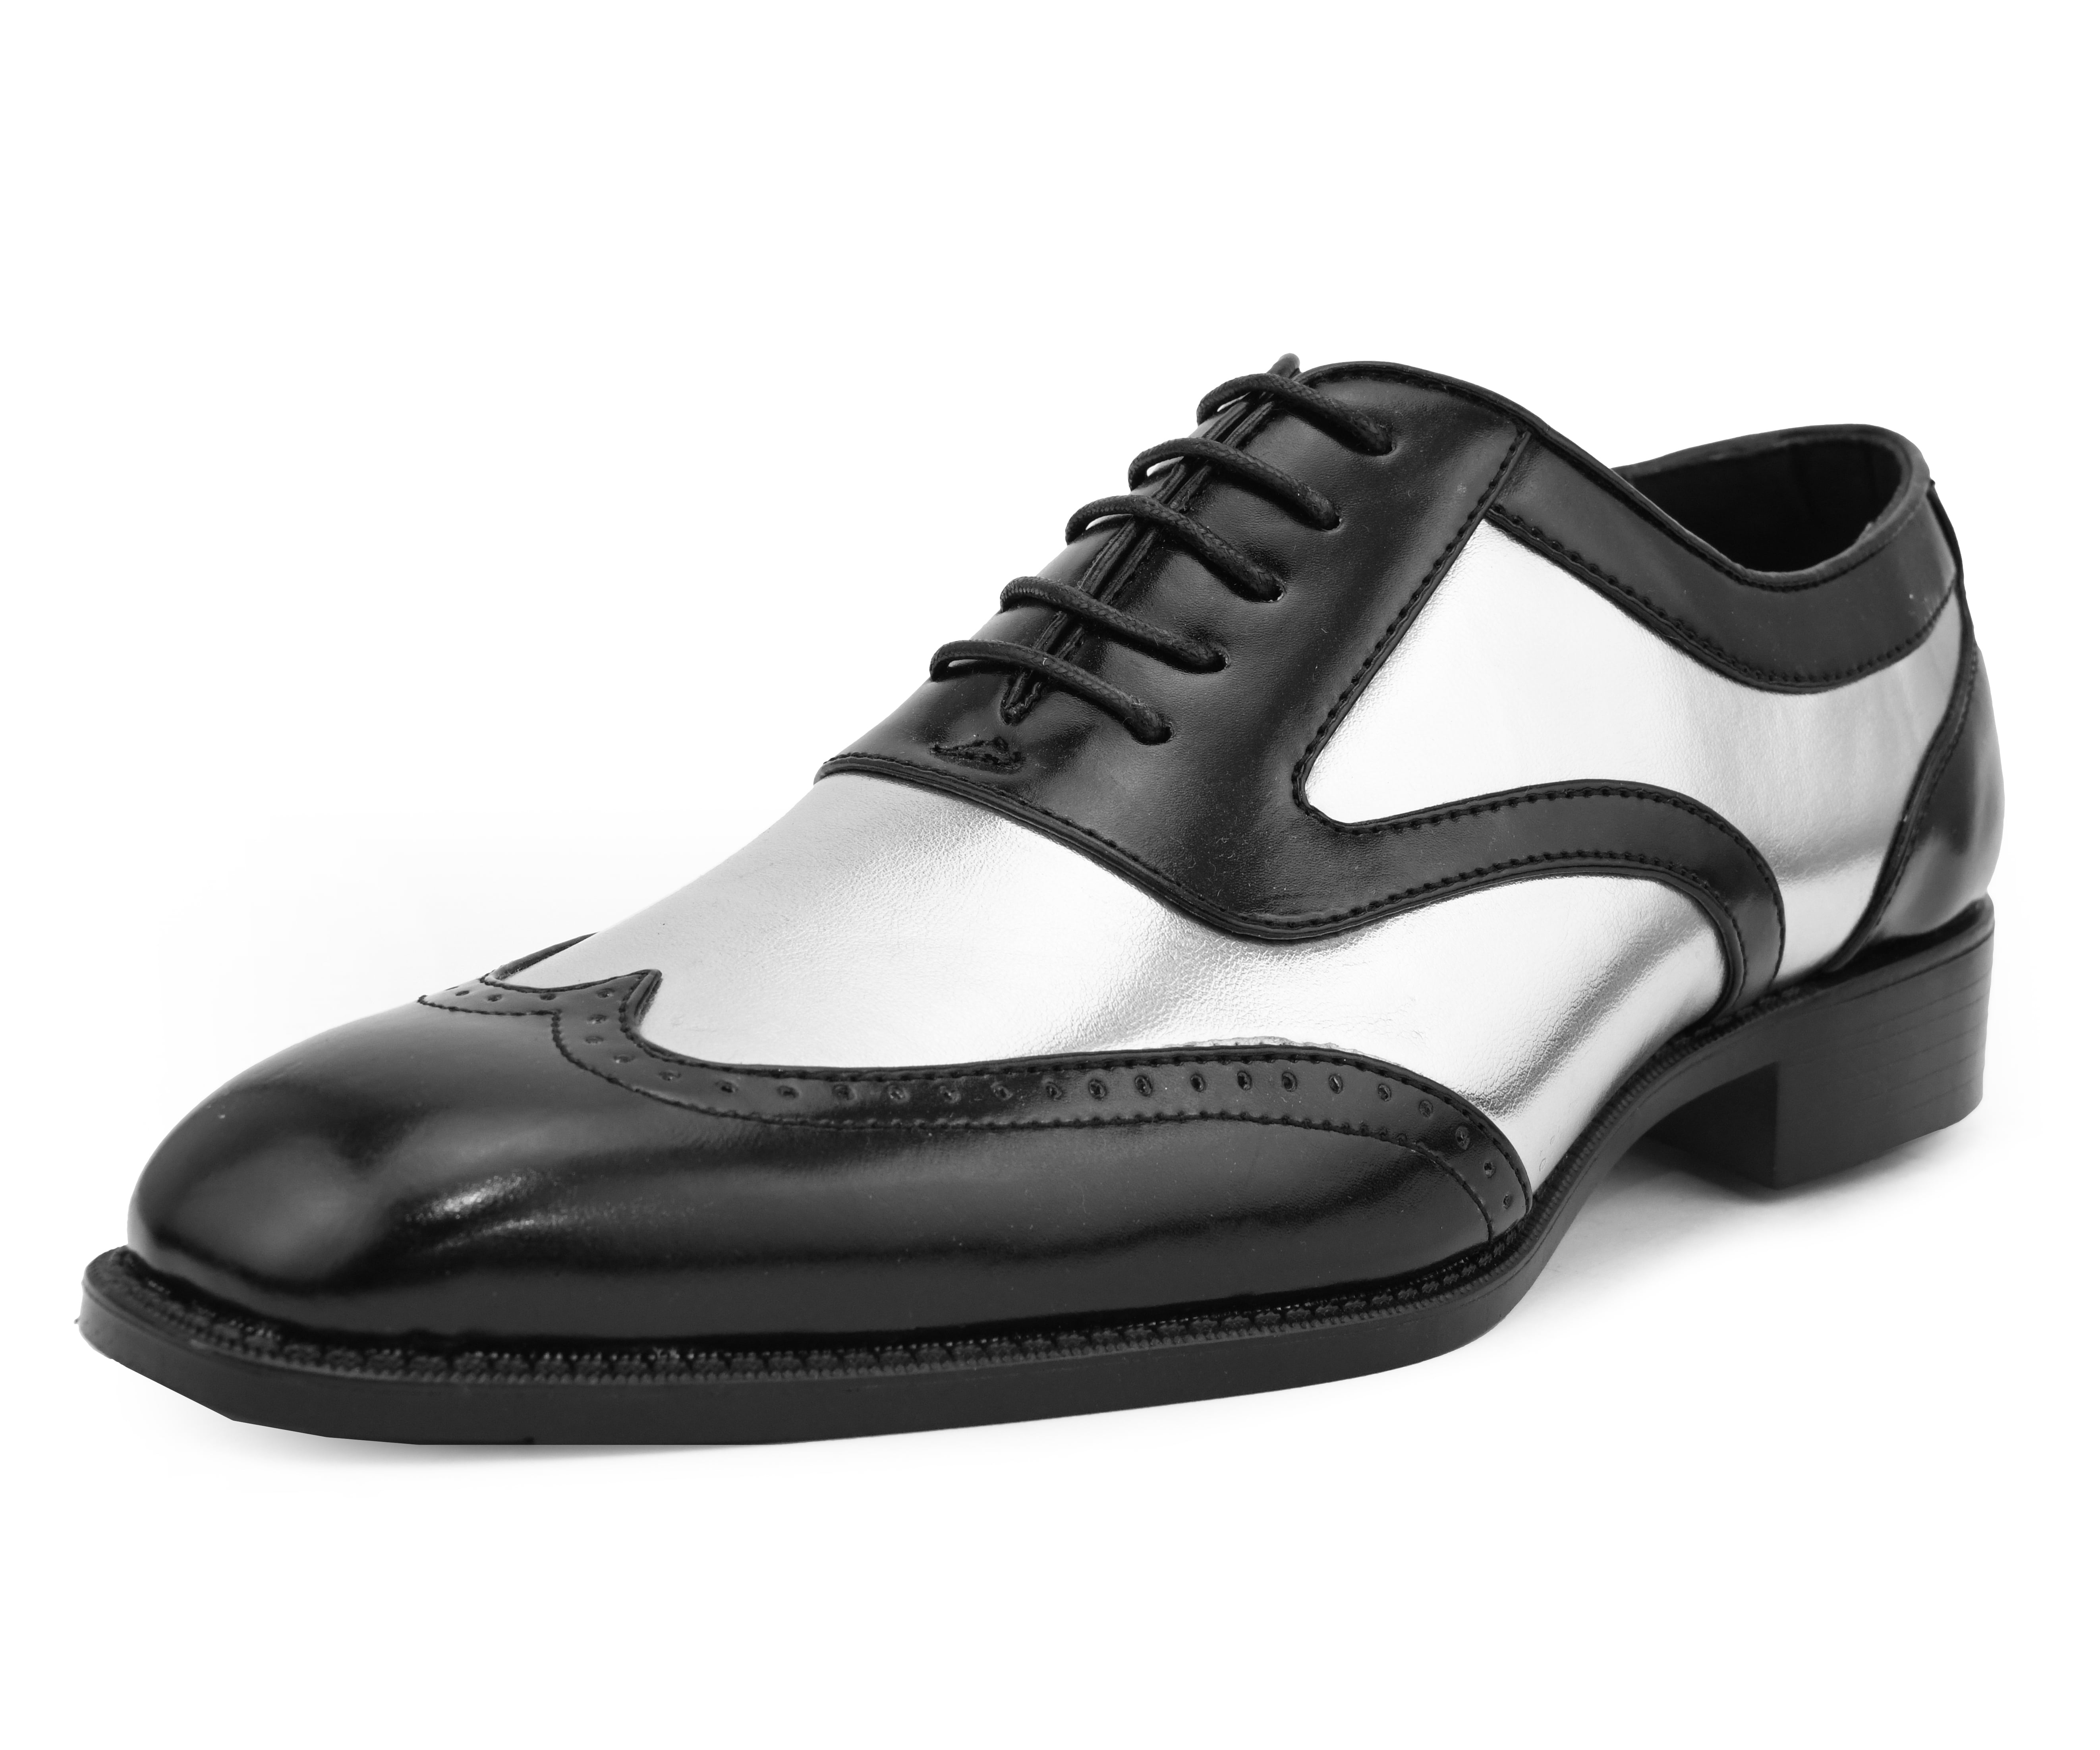 New men Lace Up Oxfords Mens Dress Tuxedo Formal Shoes Cap Toe Patent Leather Sz 